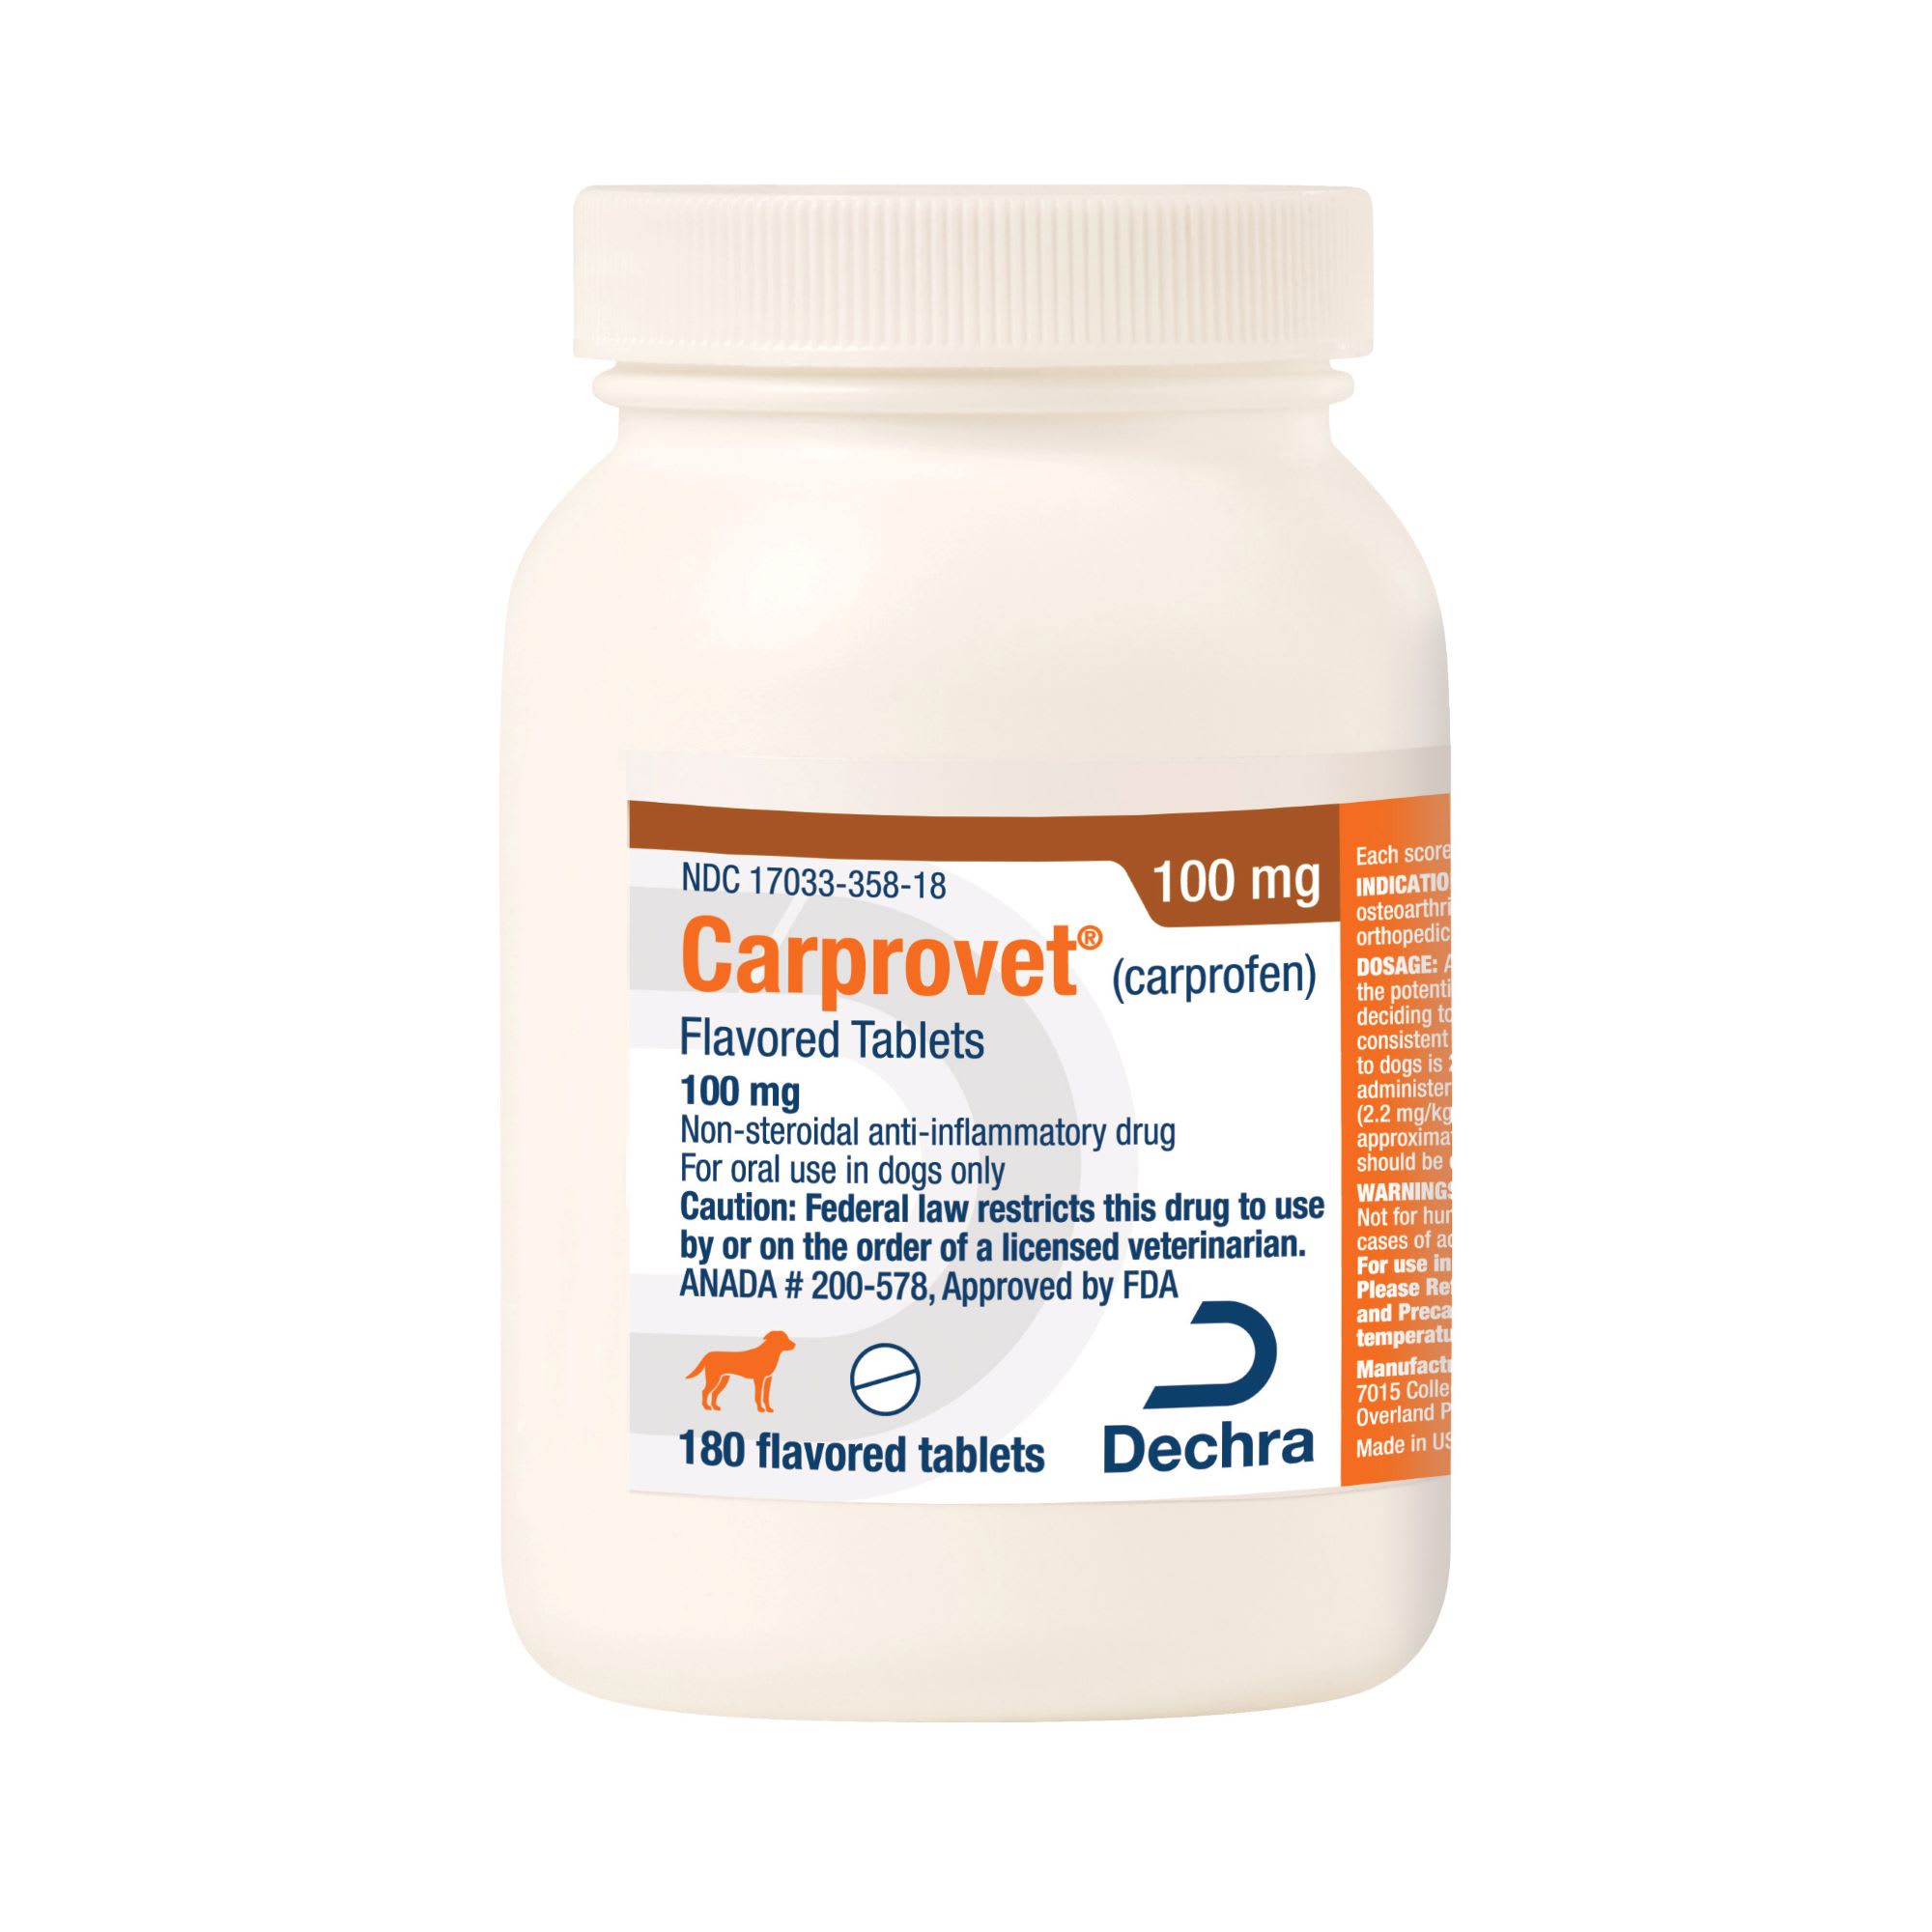 Carprovet Flavor Tablets 100 mg, 180 Count, 180 CT